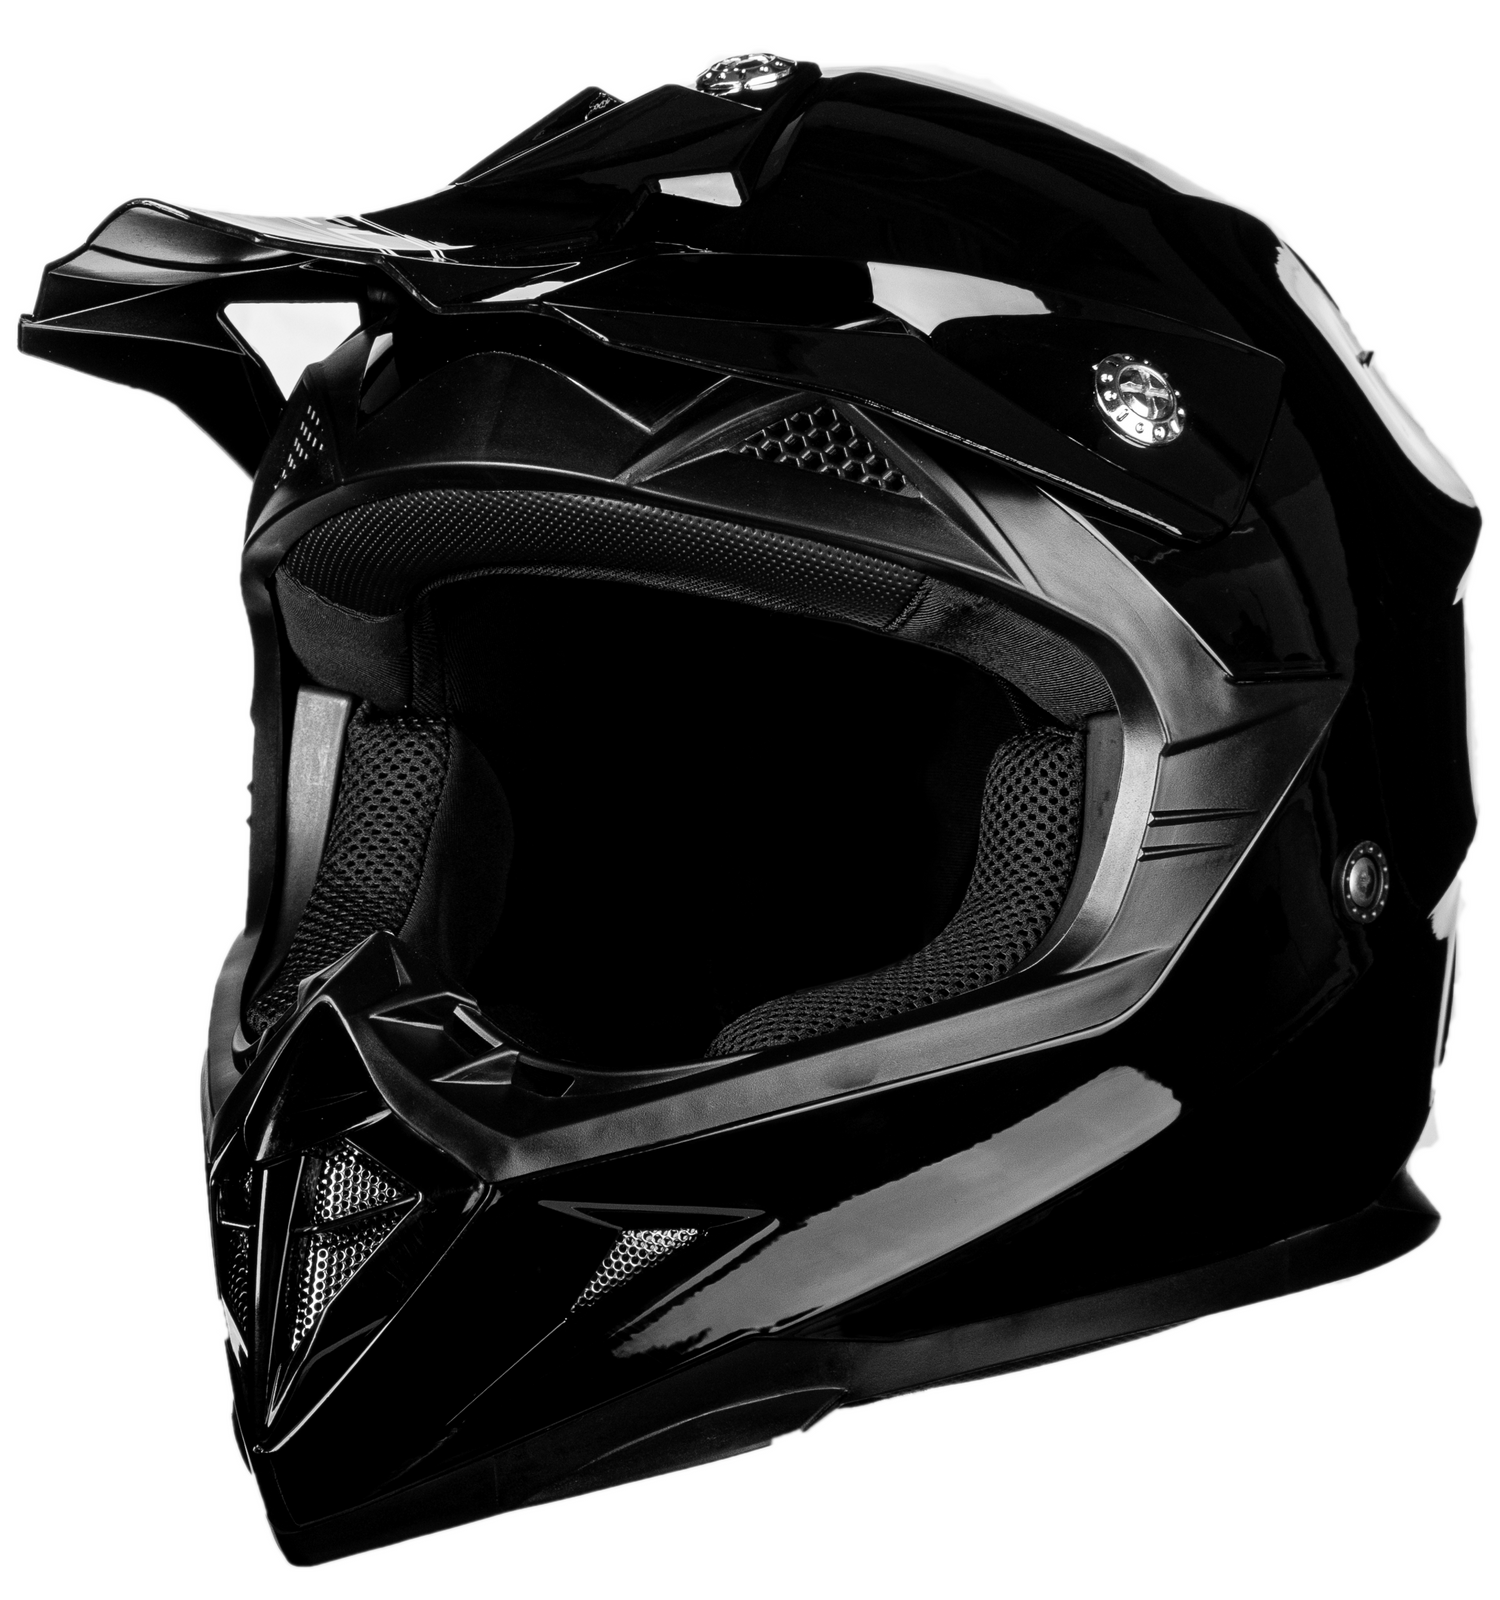 Premium Motocross Helmets